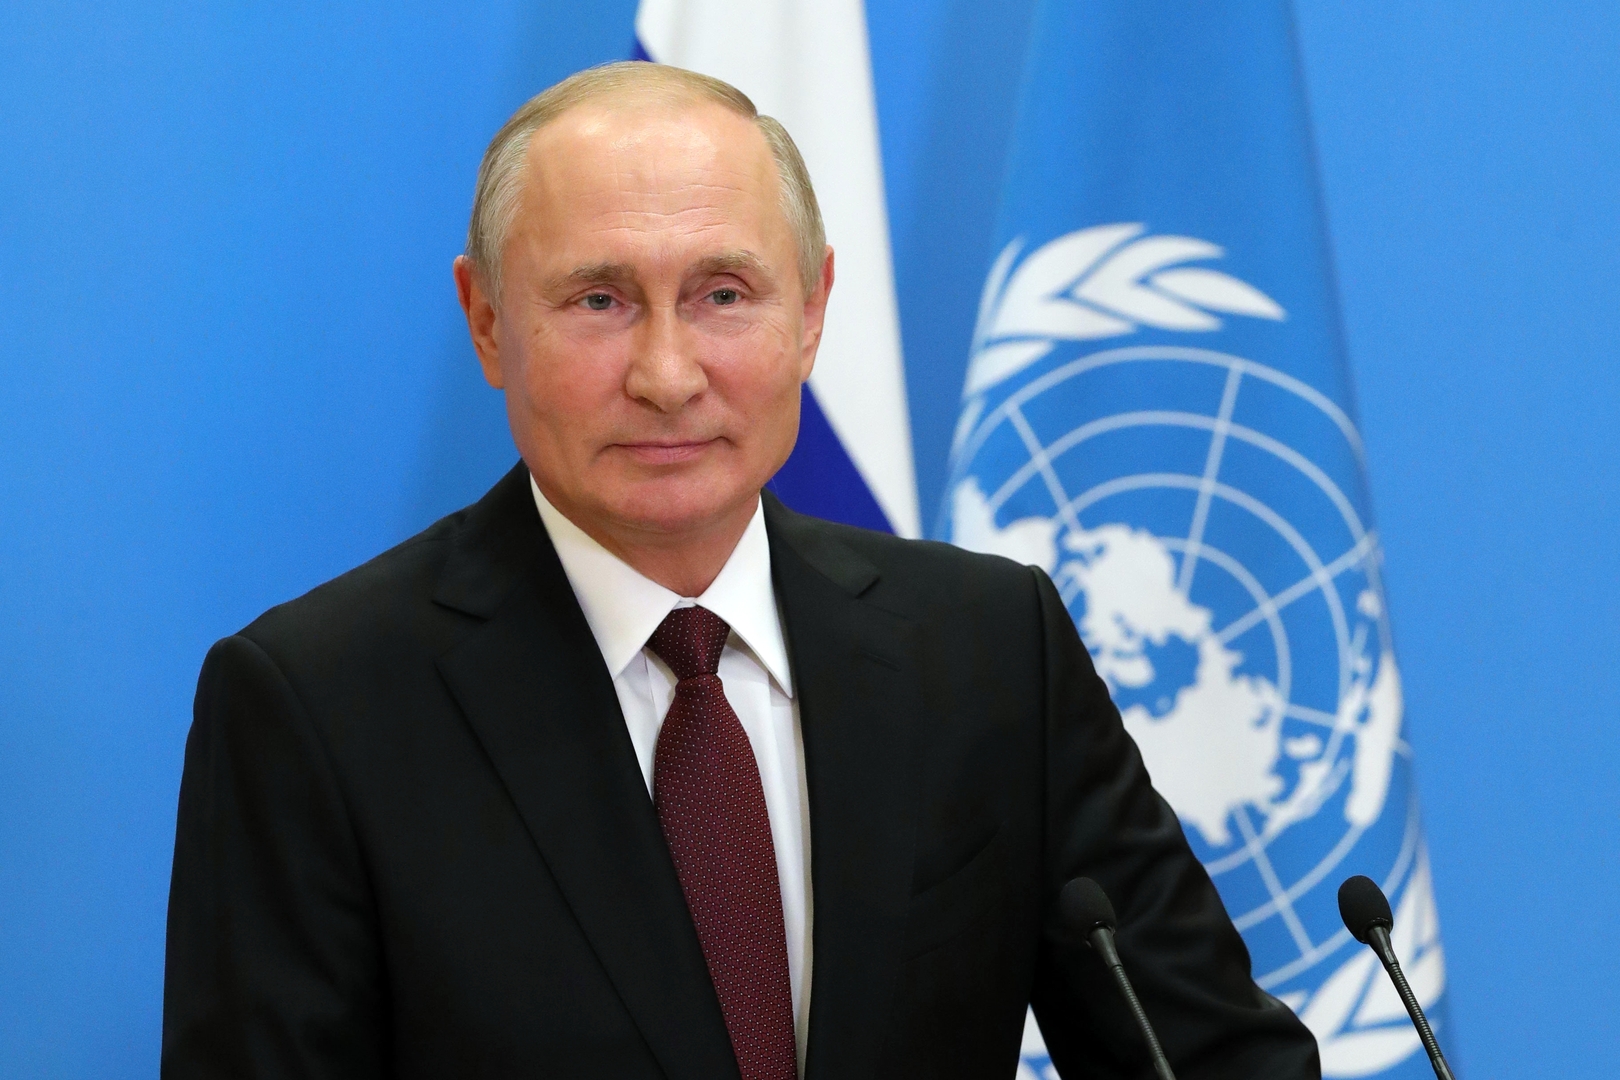 بوتين: روسيا ستبذل كل الجهود الممكنة لدعم حل الأزمات الإقليمية سلميا